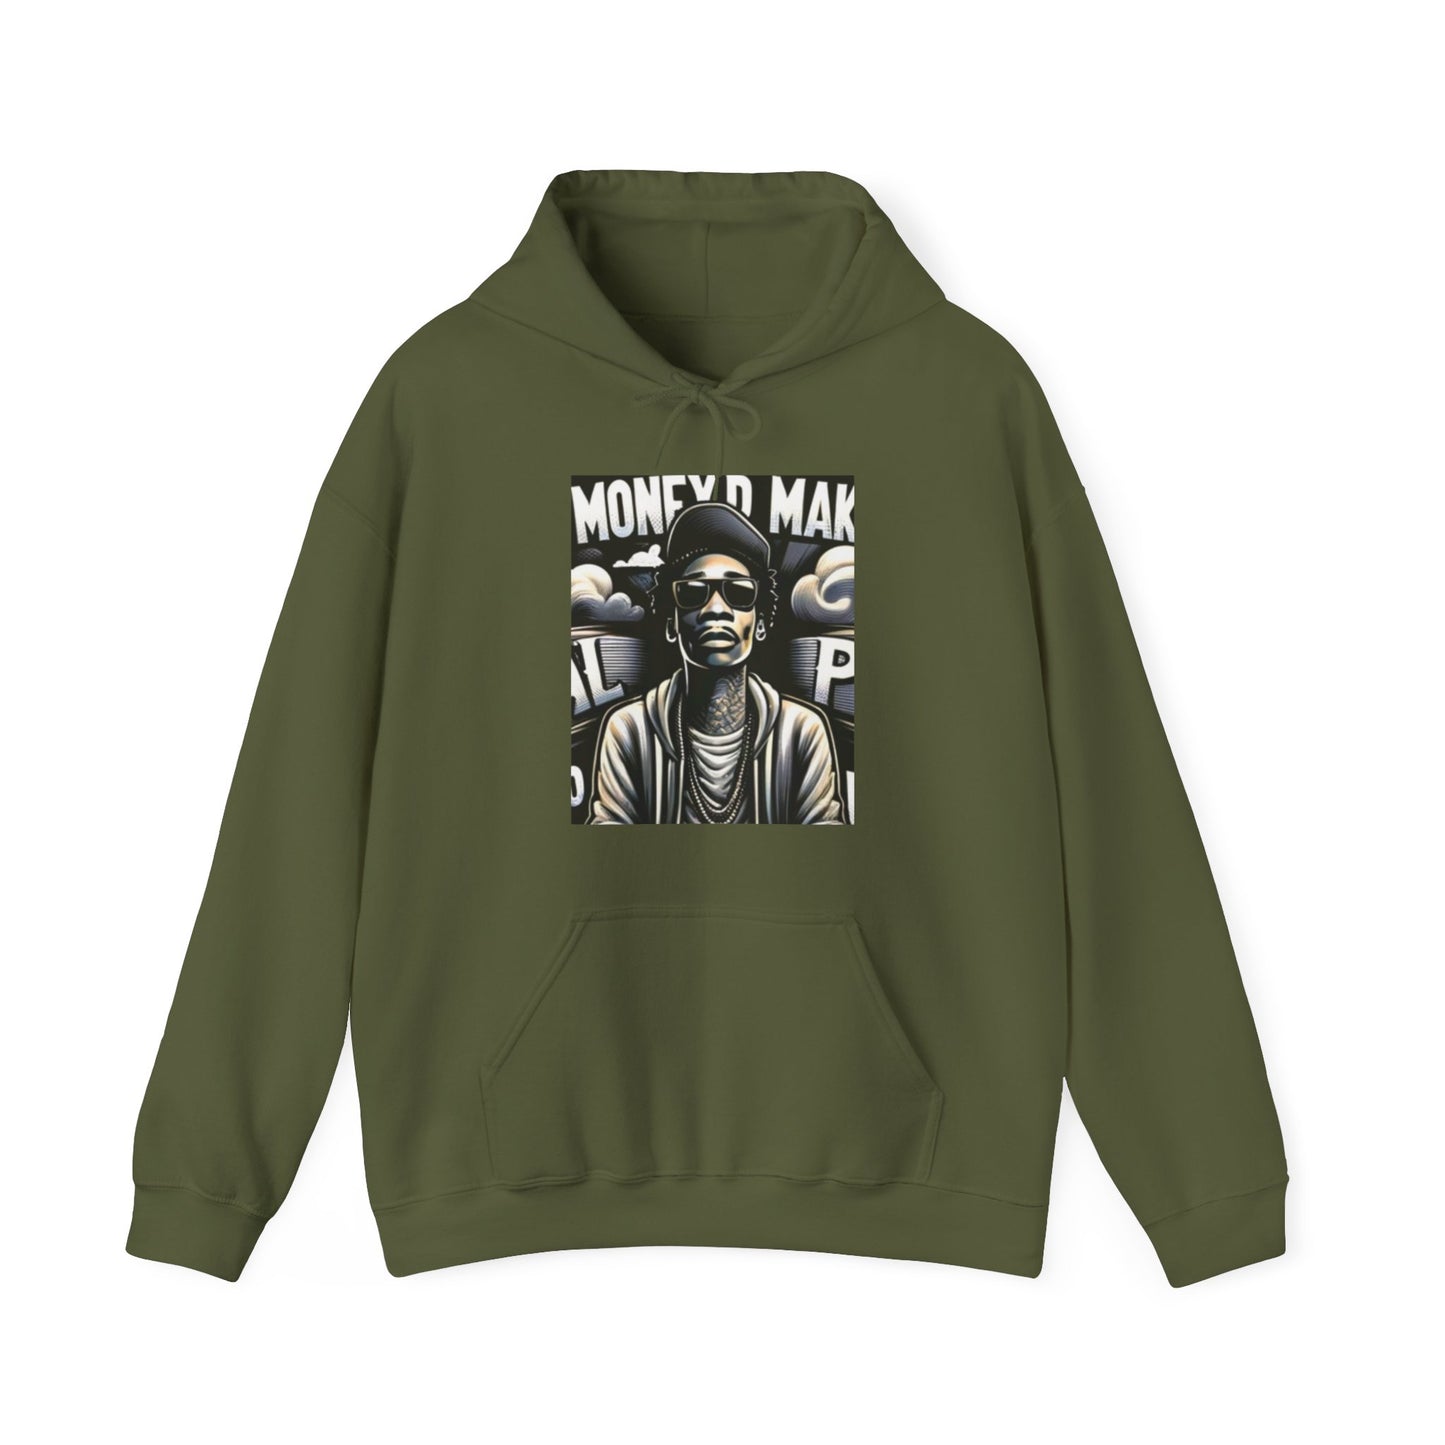 Members™ Hooded Sweatshirt